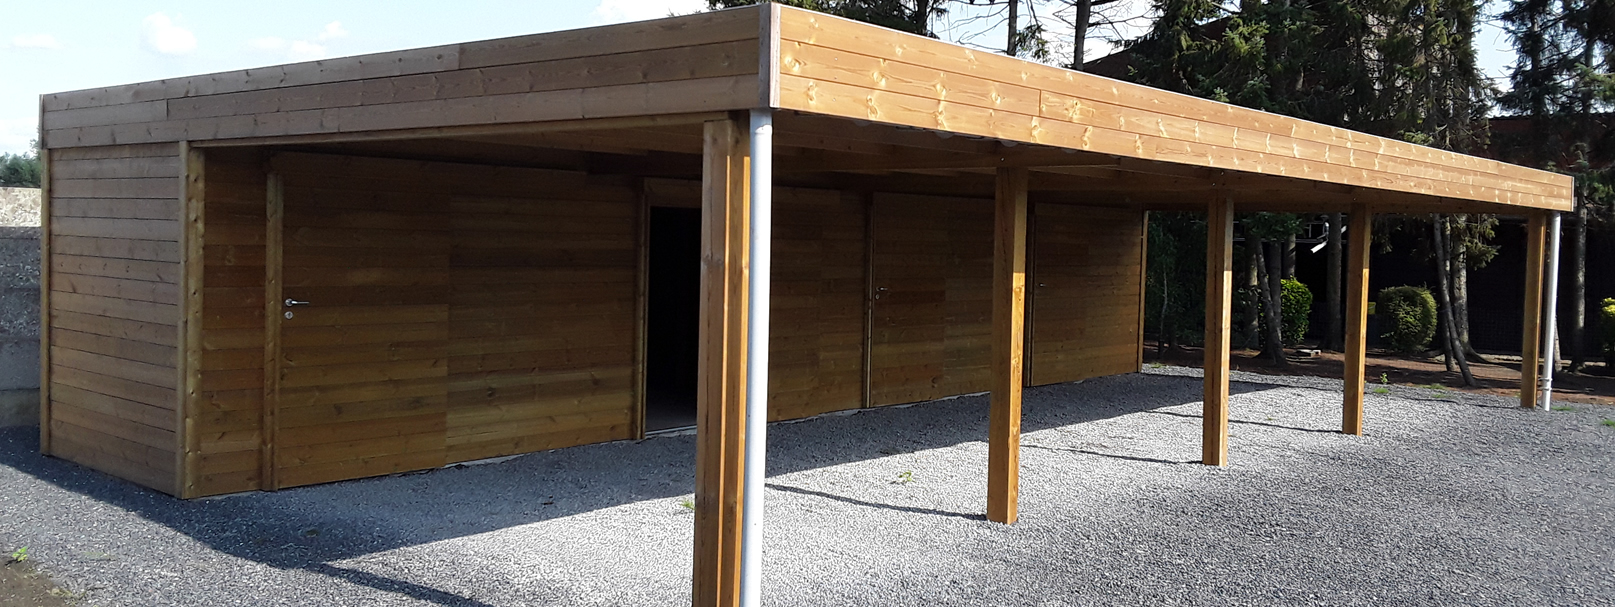 Moderne carport in hout aan gevel met berging en poort voor klant uit Oost Vlaanderen